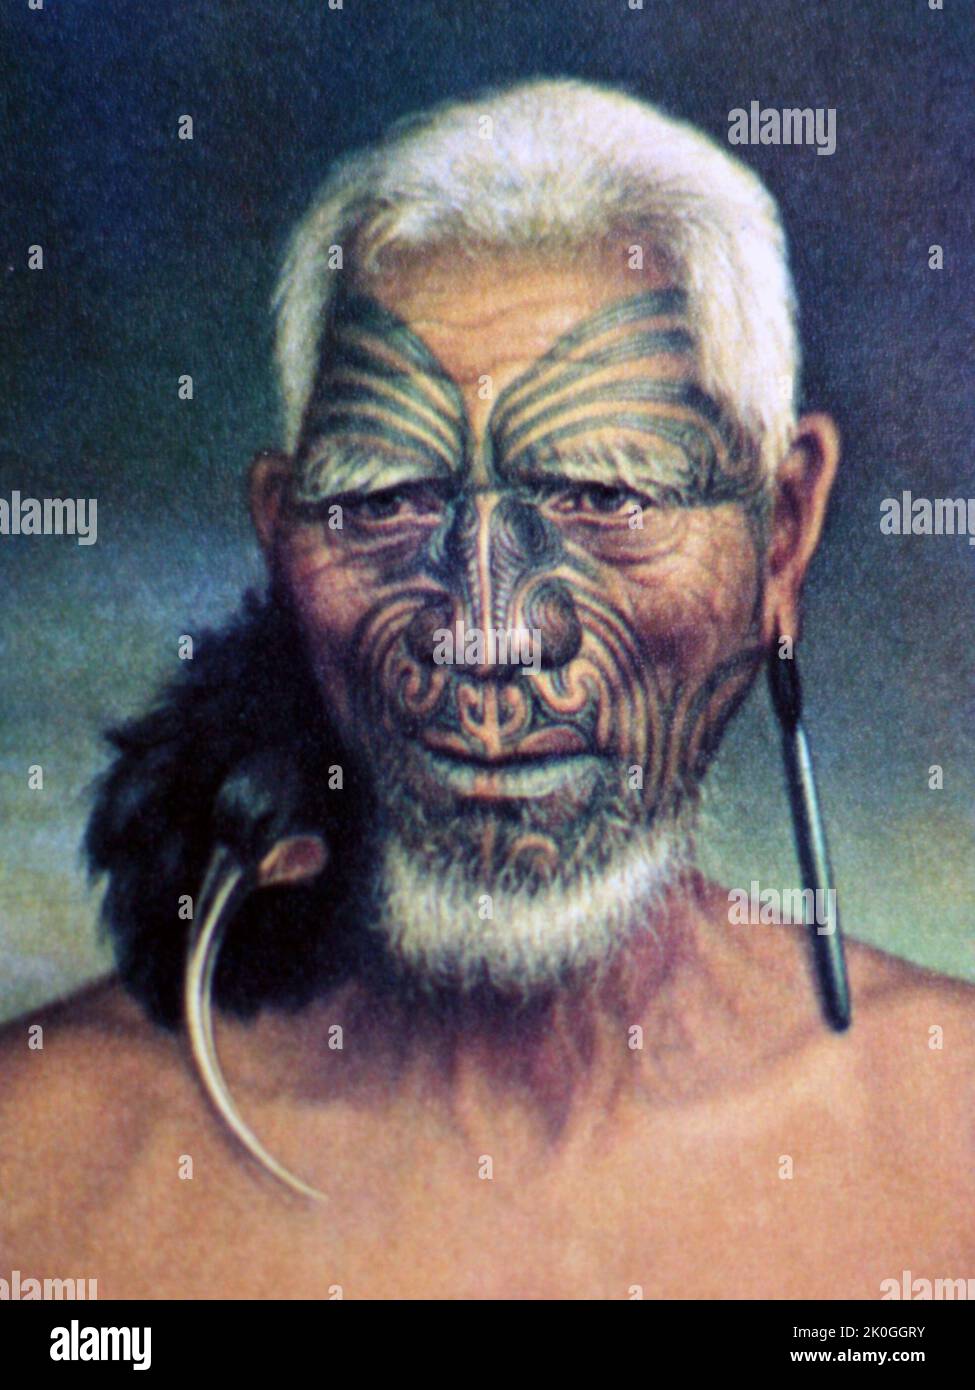 Ritratto di Tukukino, un vecchio capo combattente del popolo Ngāti Tamaterā del distretto di Hauraki, Isola del Nord, Nuova Zelanda. Viene raffigurato indossando un ornamento pōhoi orecchio realizzato con la pelle dell'huia, ornamento spesso indossato dai capi nati negli anni precedenti l'estinzione dell'uccello. Tukukino era famoso per la sua decisa opposizione all'apertura dell'area di Ohinemuri per l'estrazione dell'oro. Foto Stock